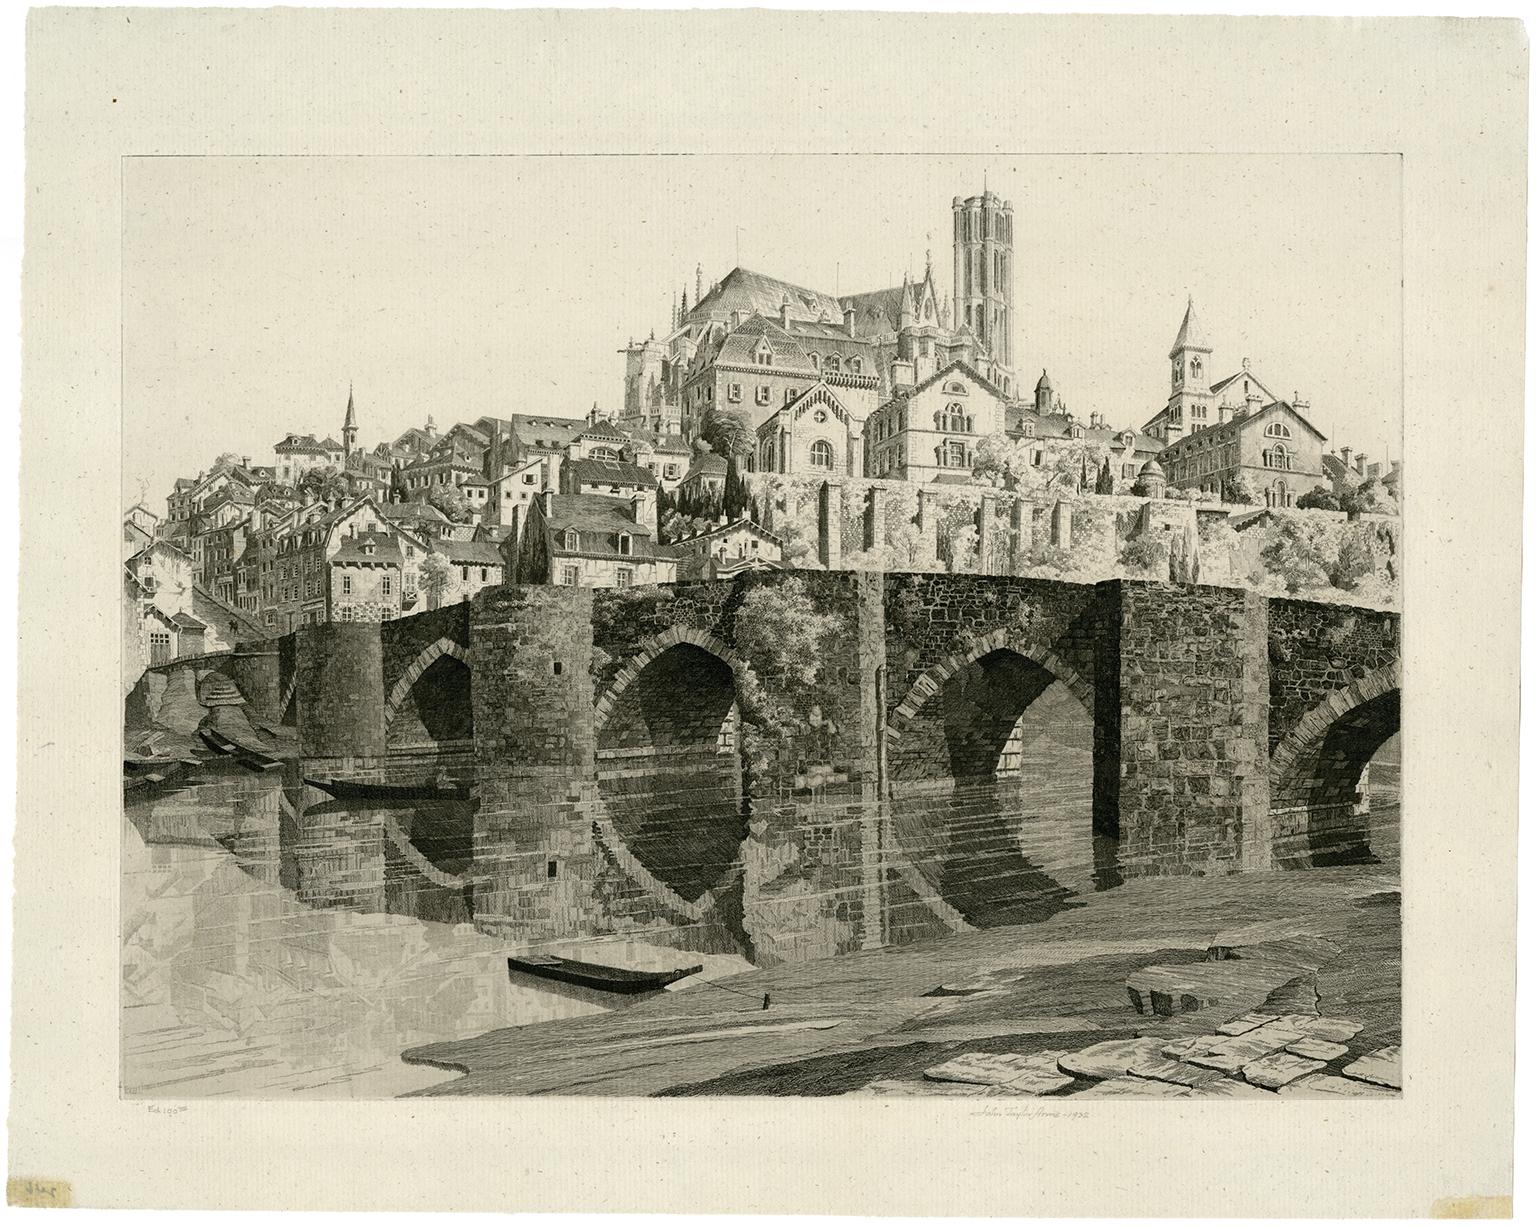 Limoges (Französische Kirchenserie #32) – Print von John Taylor Arms